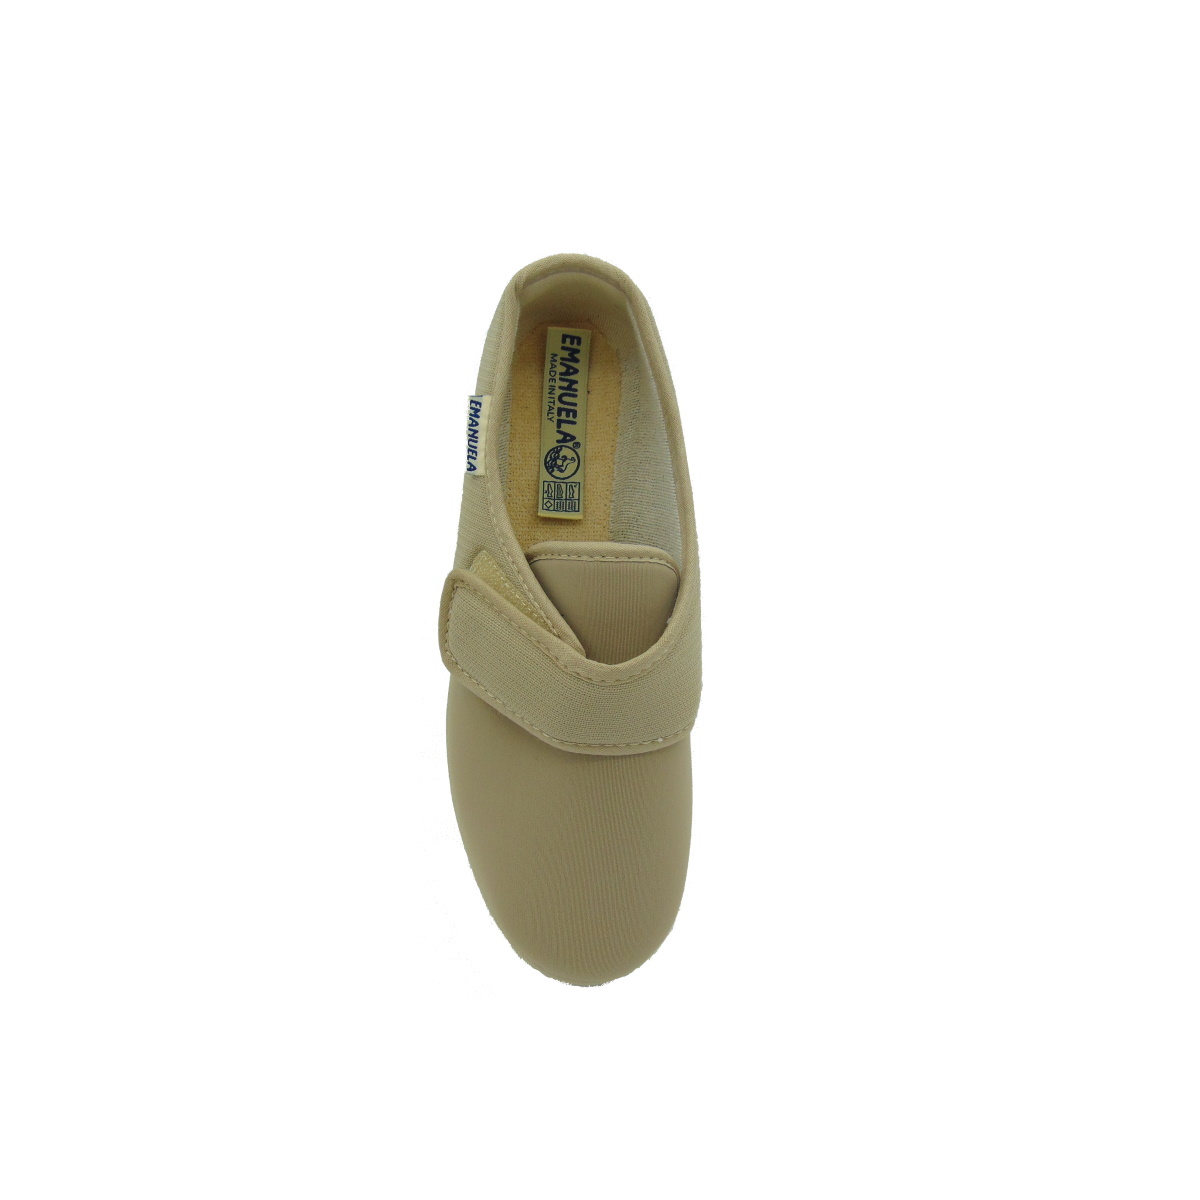 Pantofola Donna elasticizzata con strappo Emanuela 655 beige (versione estiva)img_2